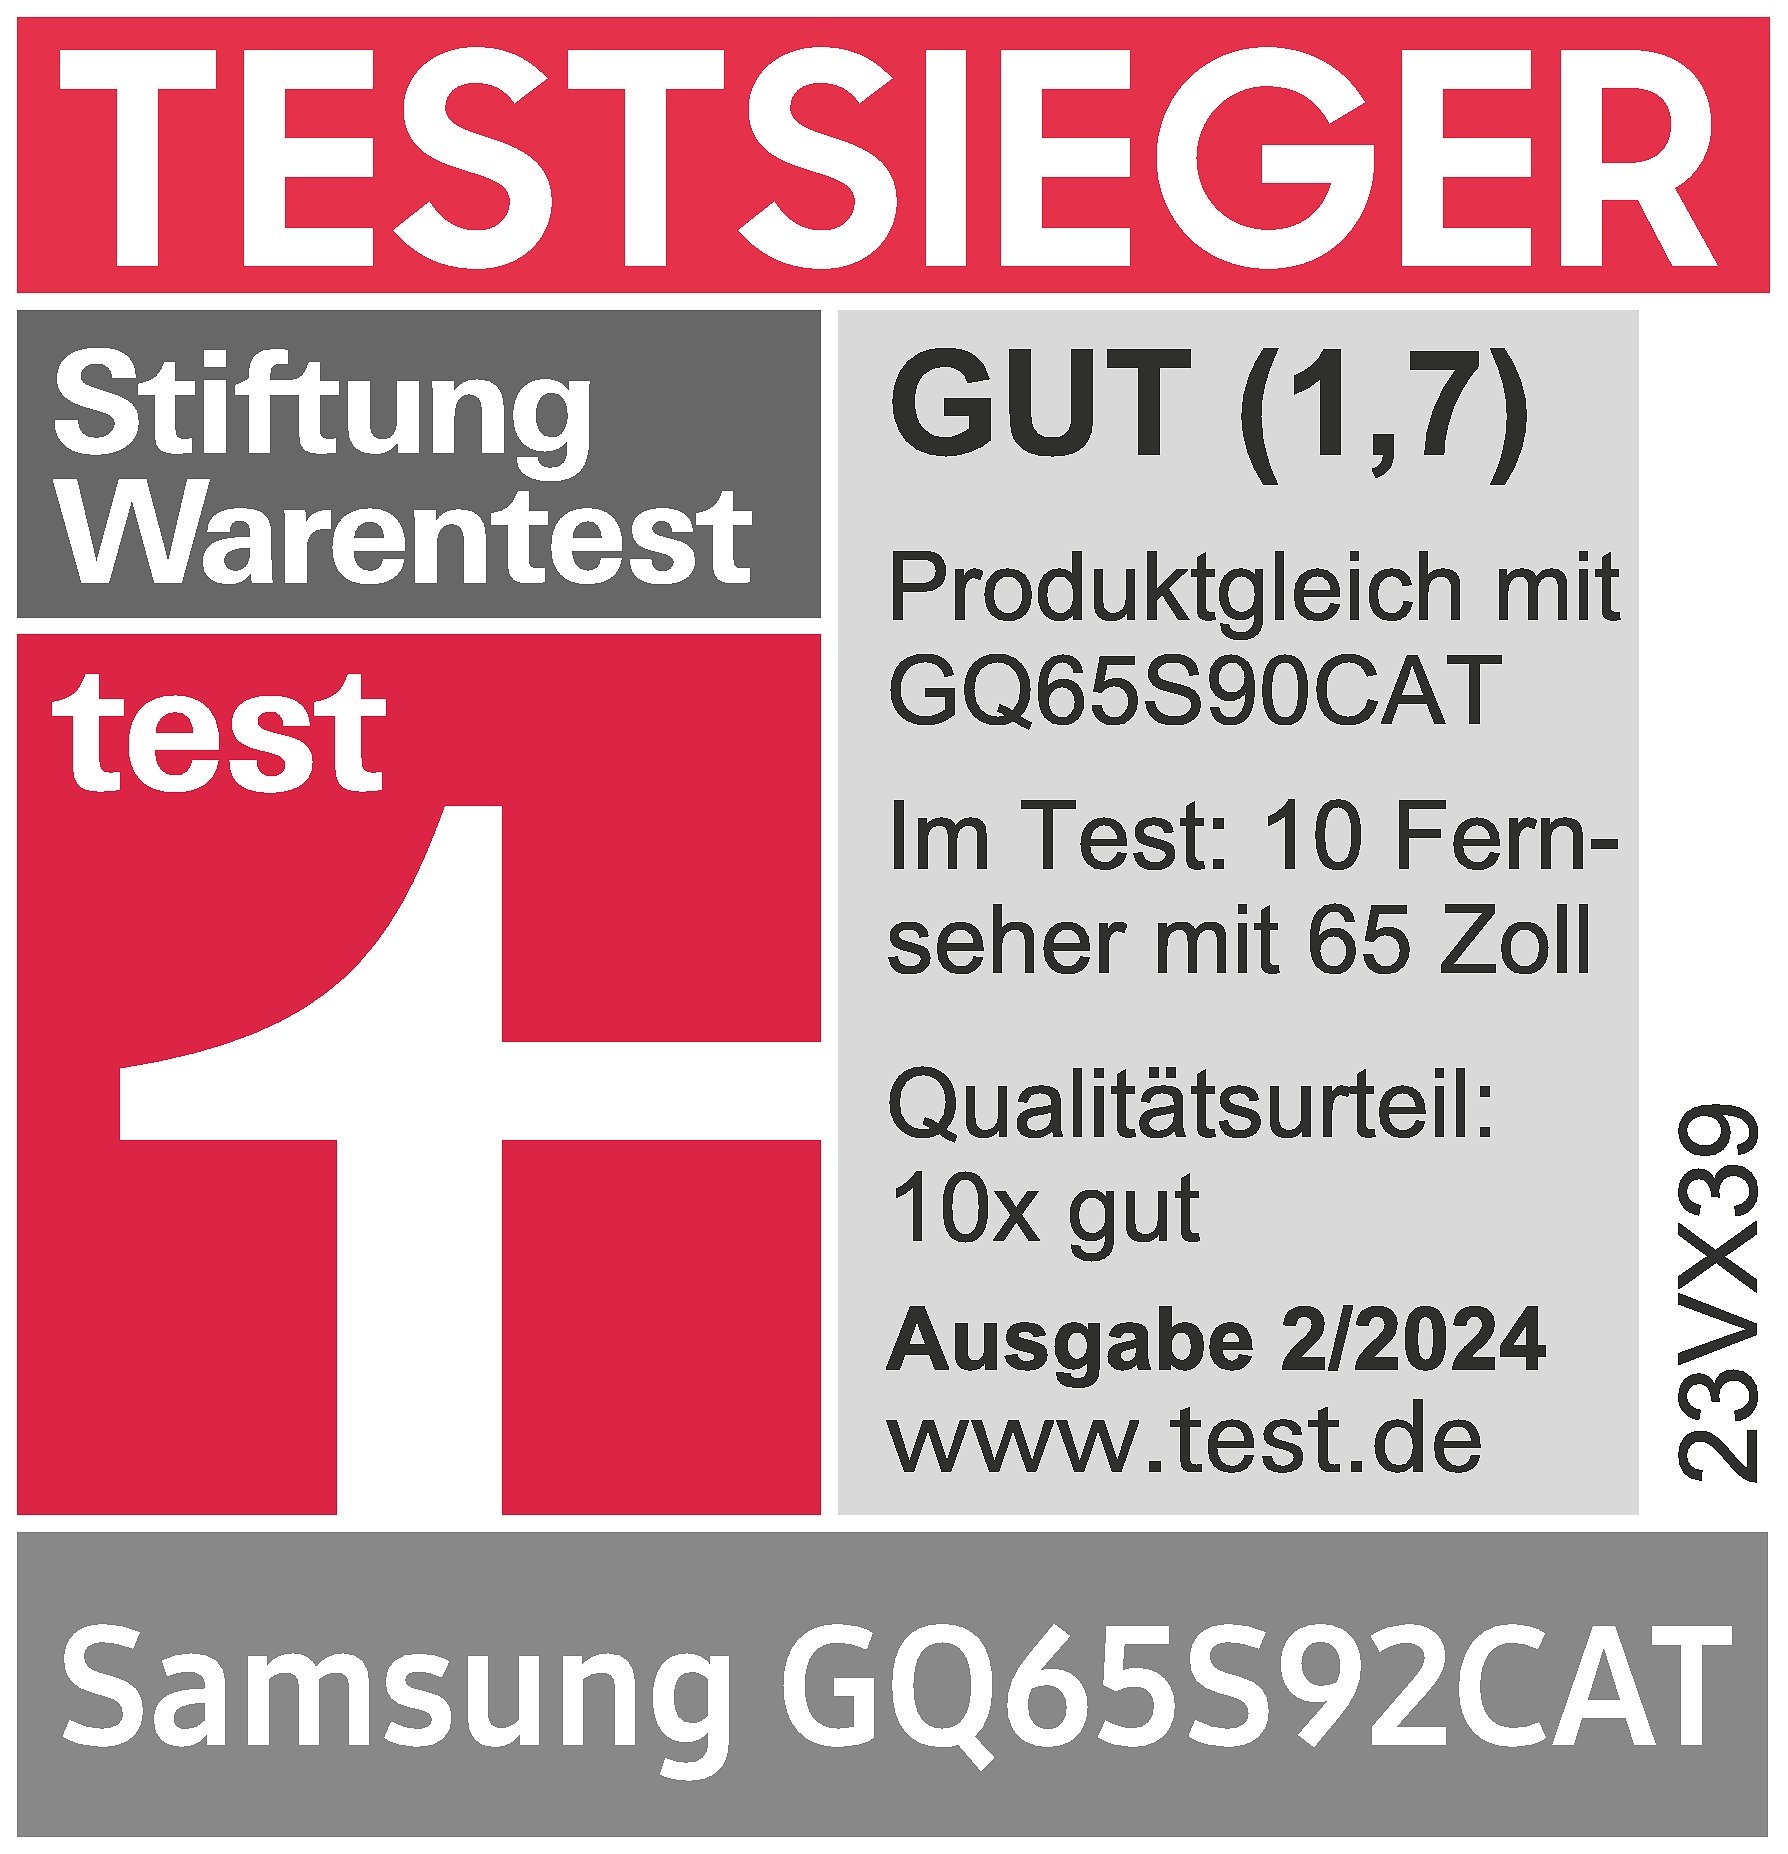 Stiftung Warentest, Testsieger, GUT (1,7), Ausgabe 2/2024, zum Samsung GQ65S92CAT, im Test: 10 Fernseher mit 65 Zoll, Qualitätsurteil: 10x gut.